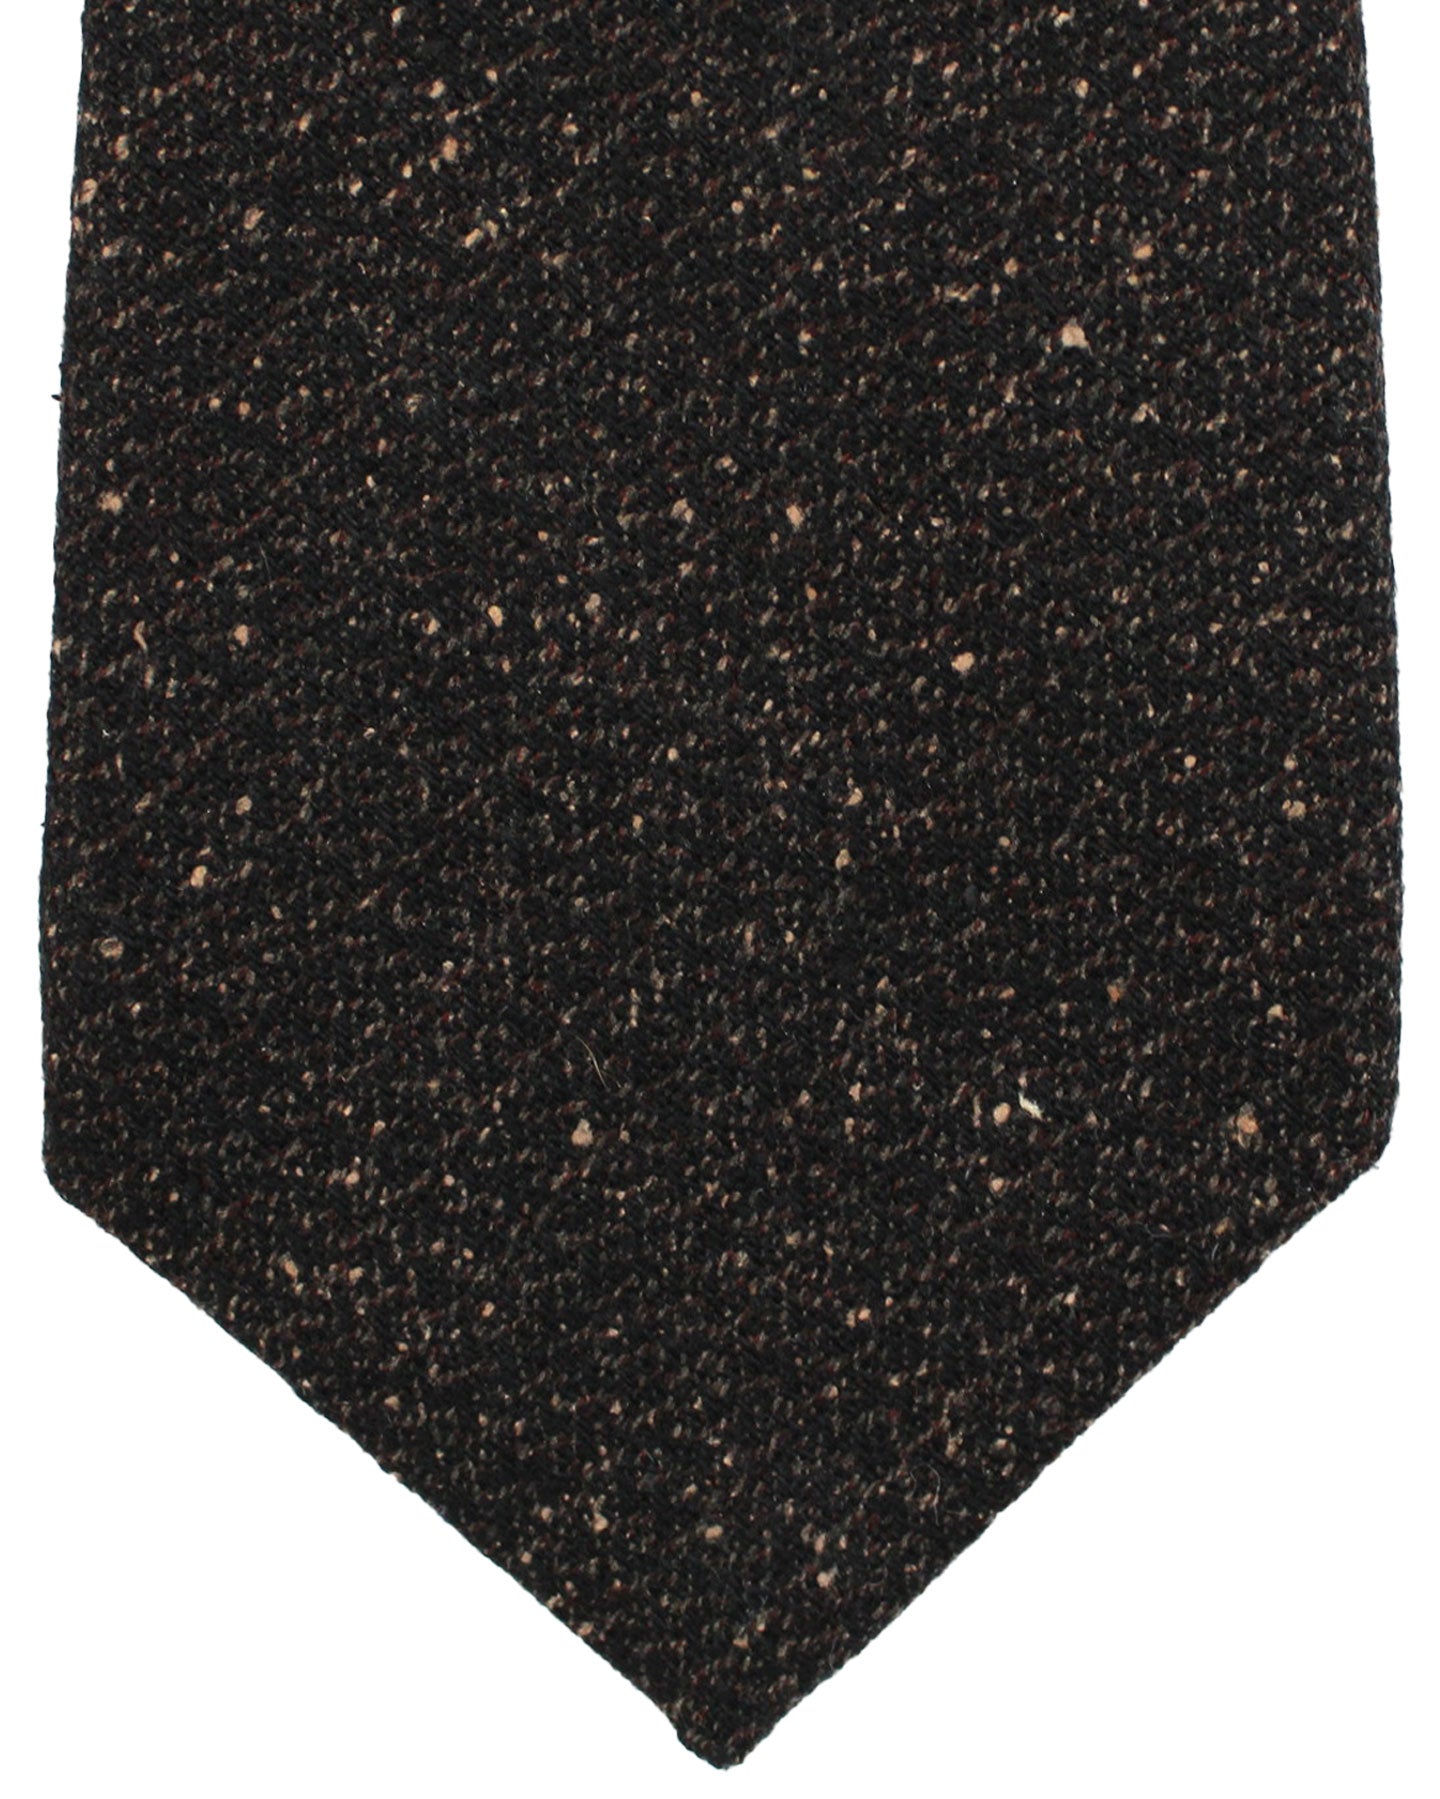 Kiton Silk Tie Brown Speckles Design - Sevenfold Necktie